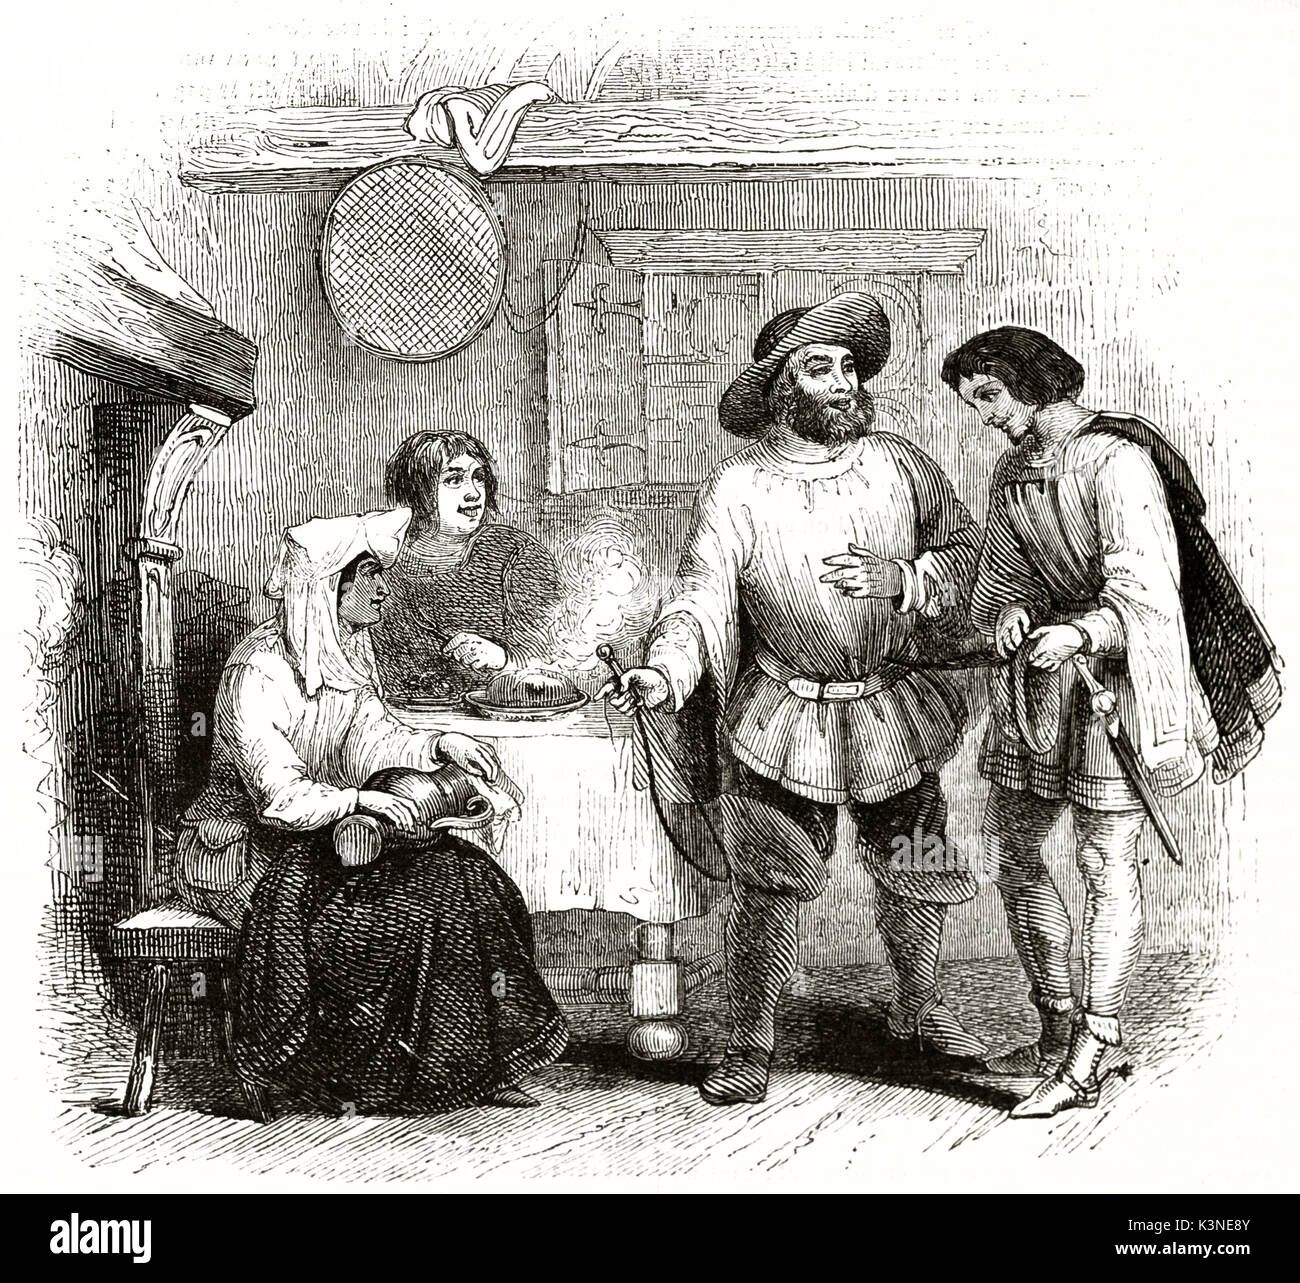 Vecchia immagine raffigurante il re Enrico II d'Inghilterra, la Miller di Mansfield (tradizionale ballata) e la sua famiglia nella loro casa di poveri. Da autore non identificato pubblicato il Magasin pittoresco Parigi 1839 Foto Stock